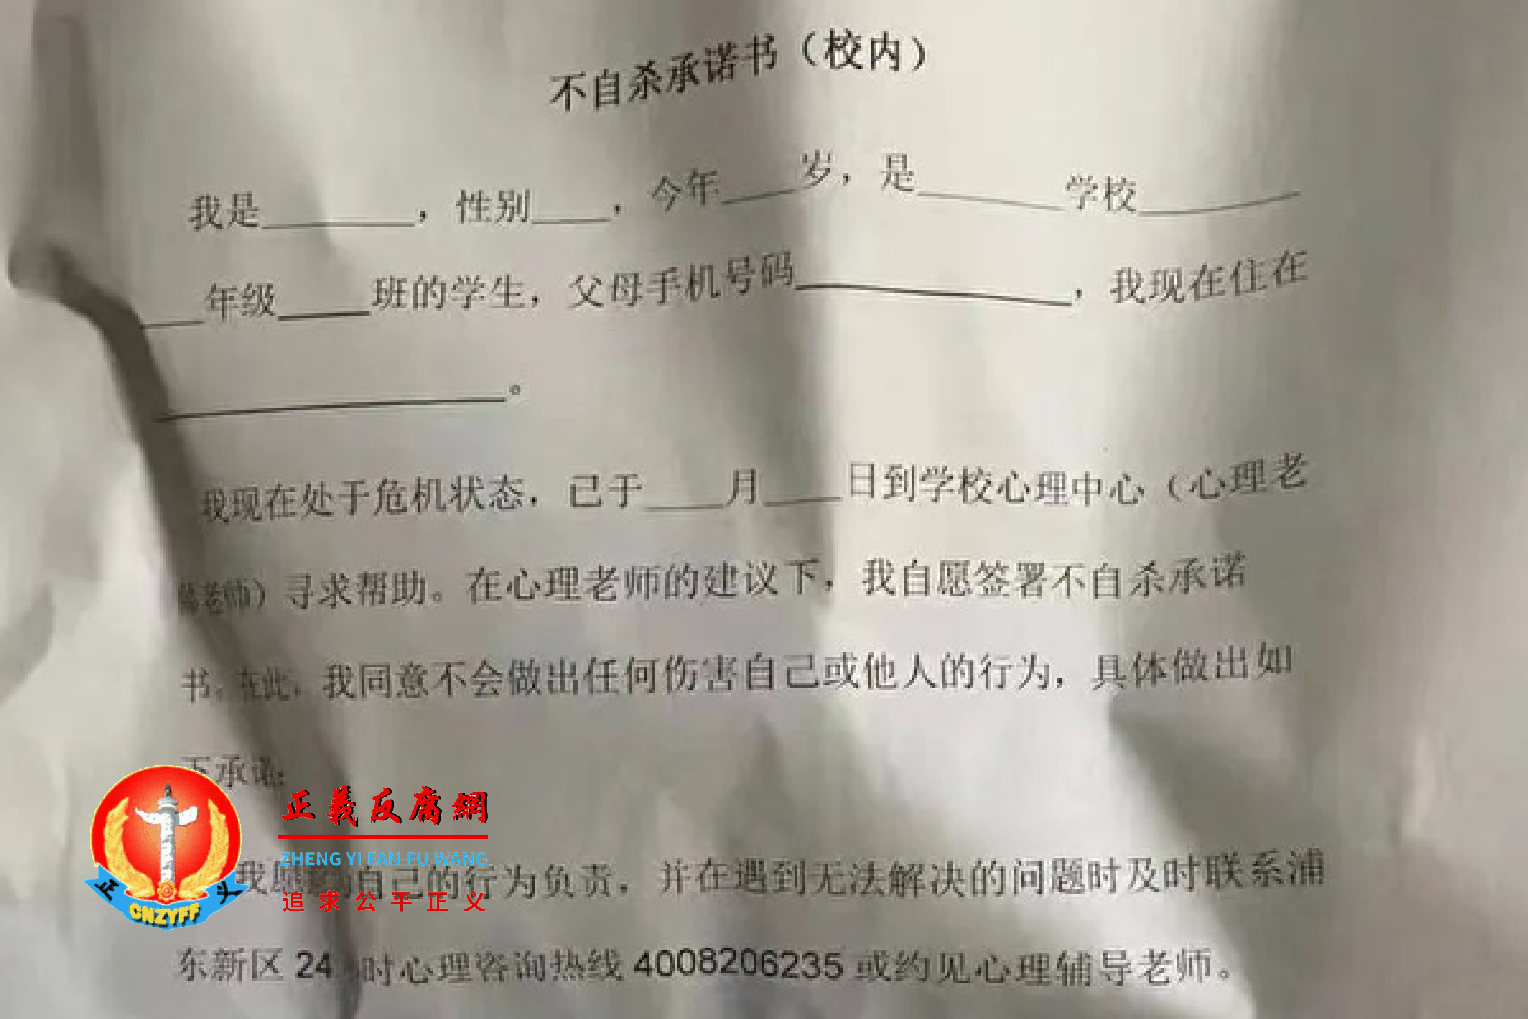 胡鑫宇事件持续发酵。由于官方将舆论导向青少年忧郁症等问题，部分学校开始要求学生签署“不自杀承诺书”等。.png